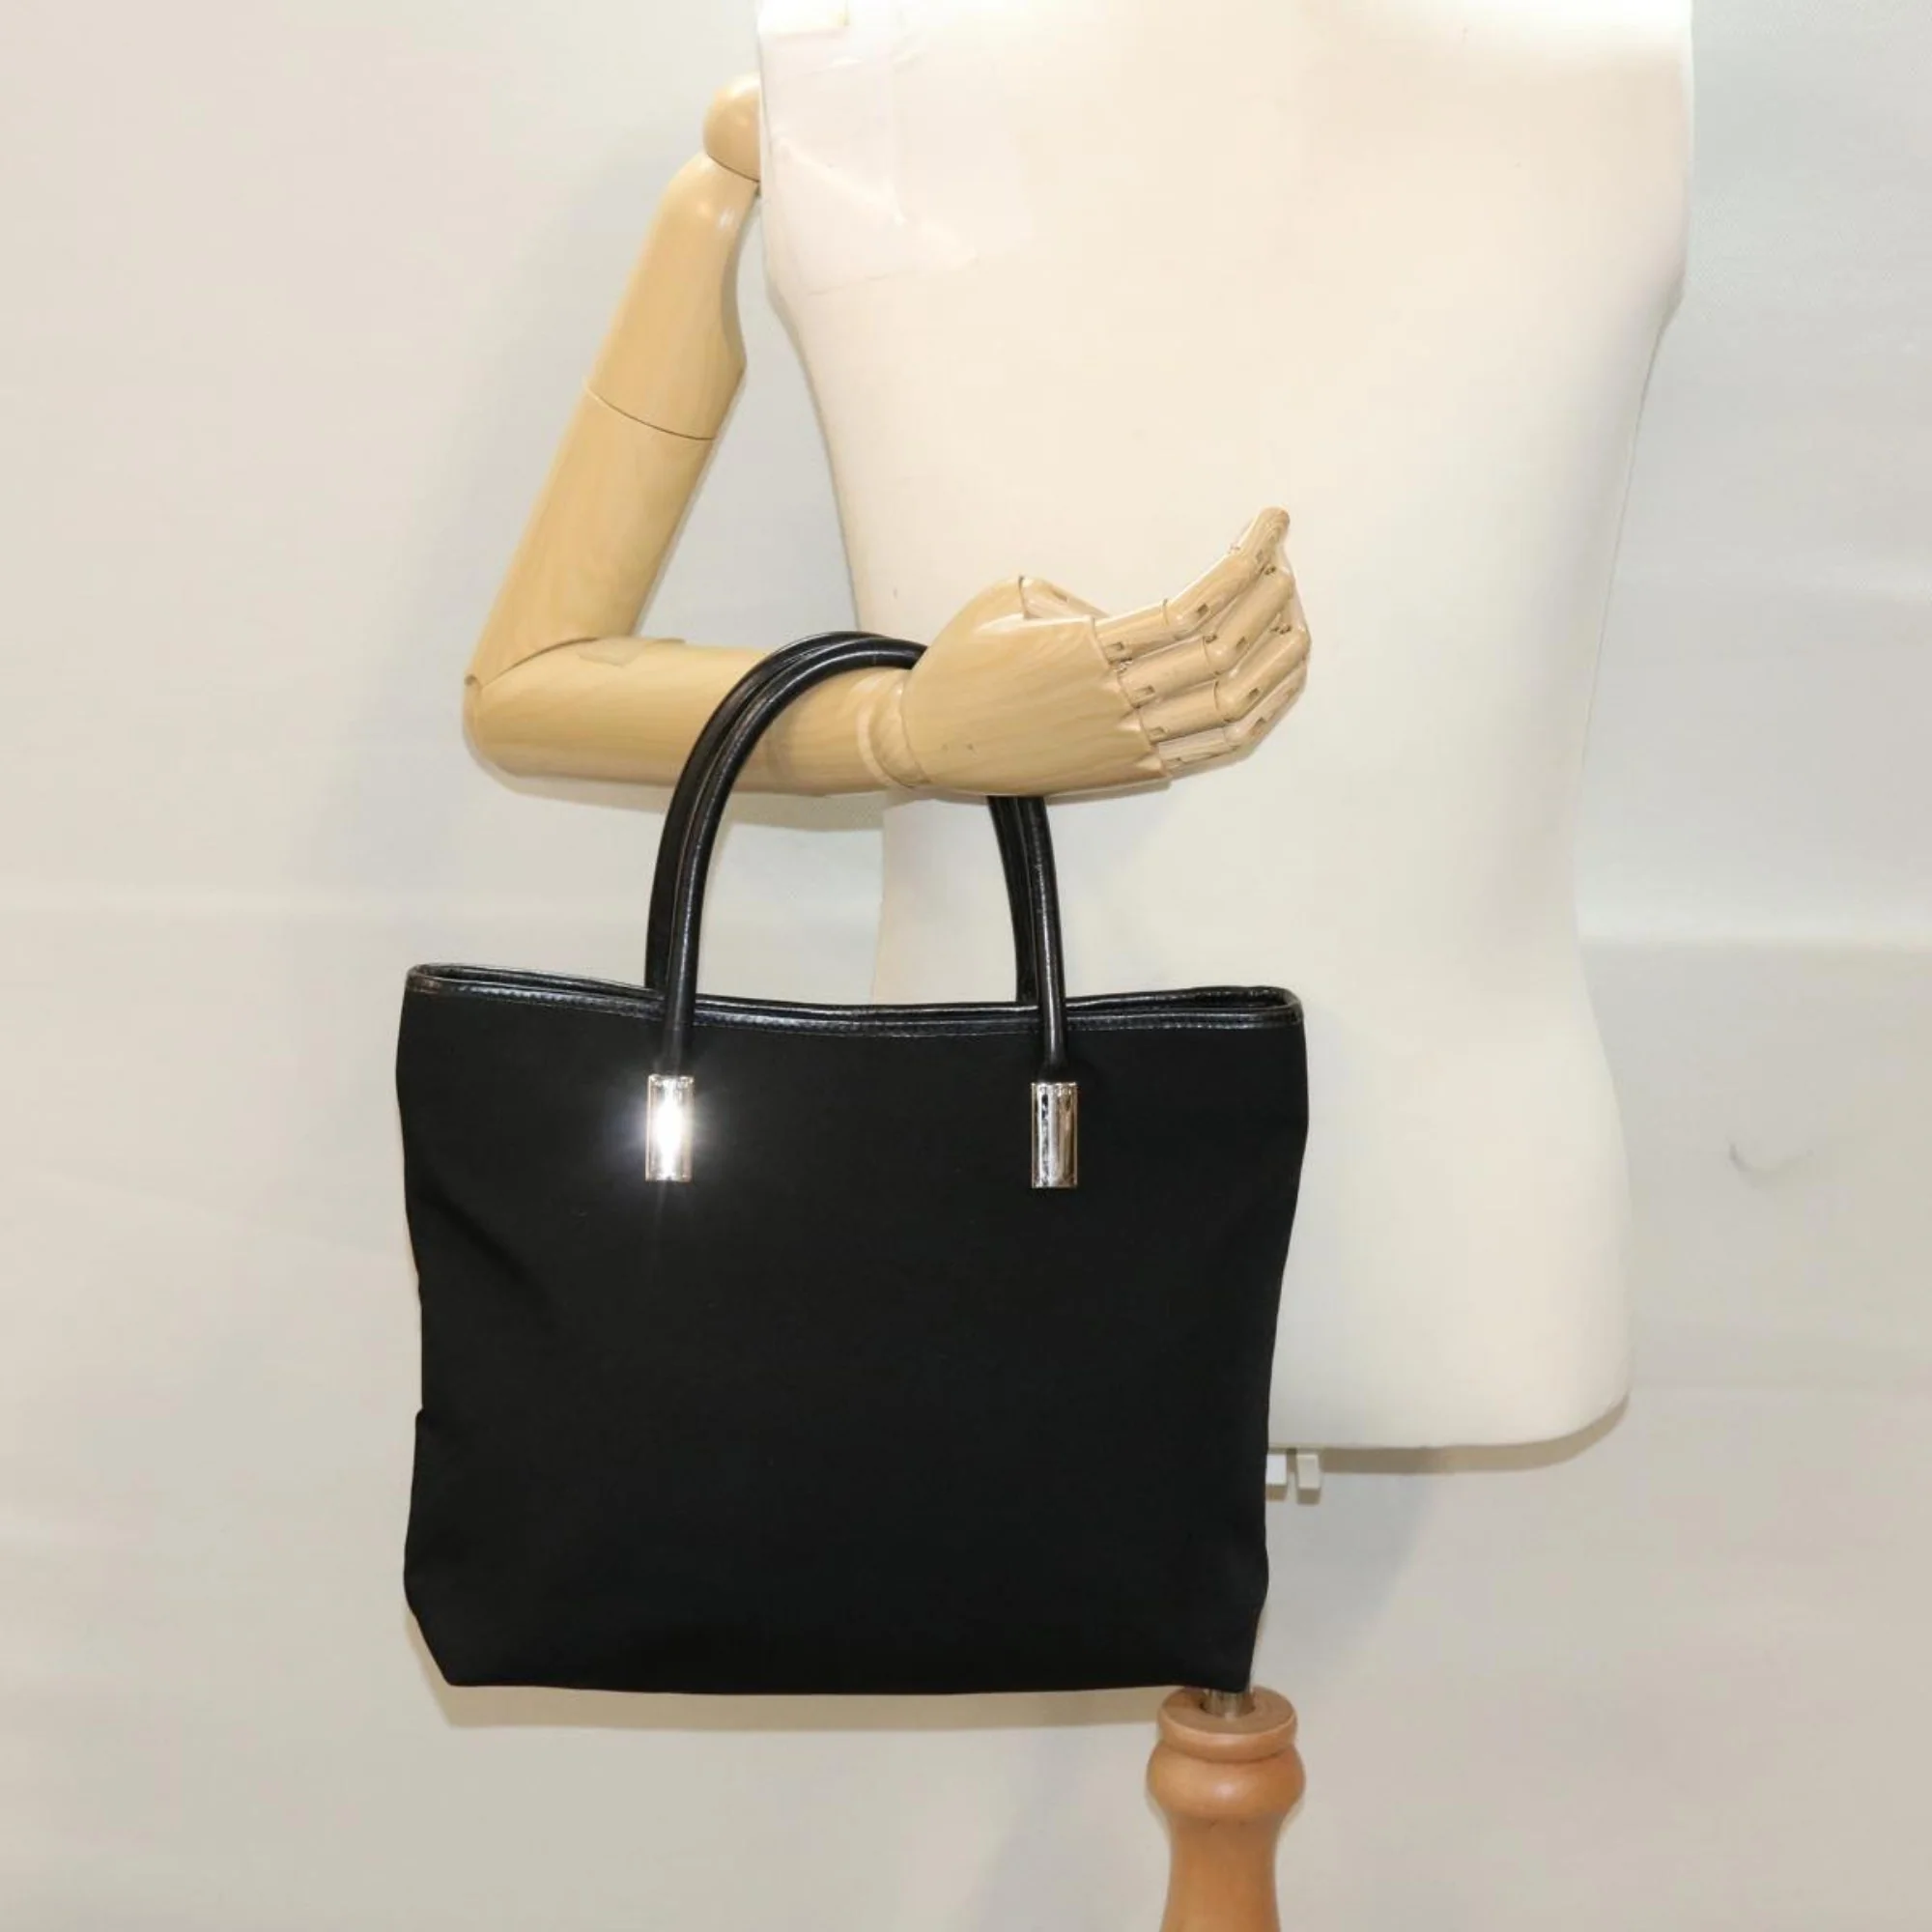 Women Gucci Diana Shoulder Bag - Black $1739